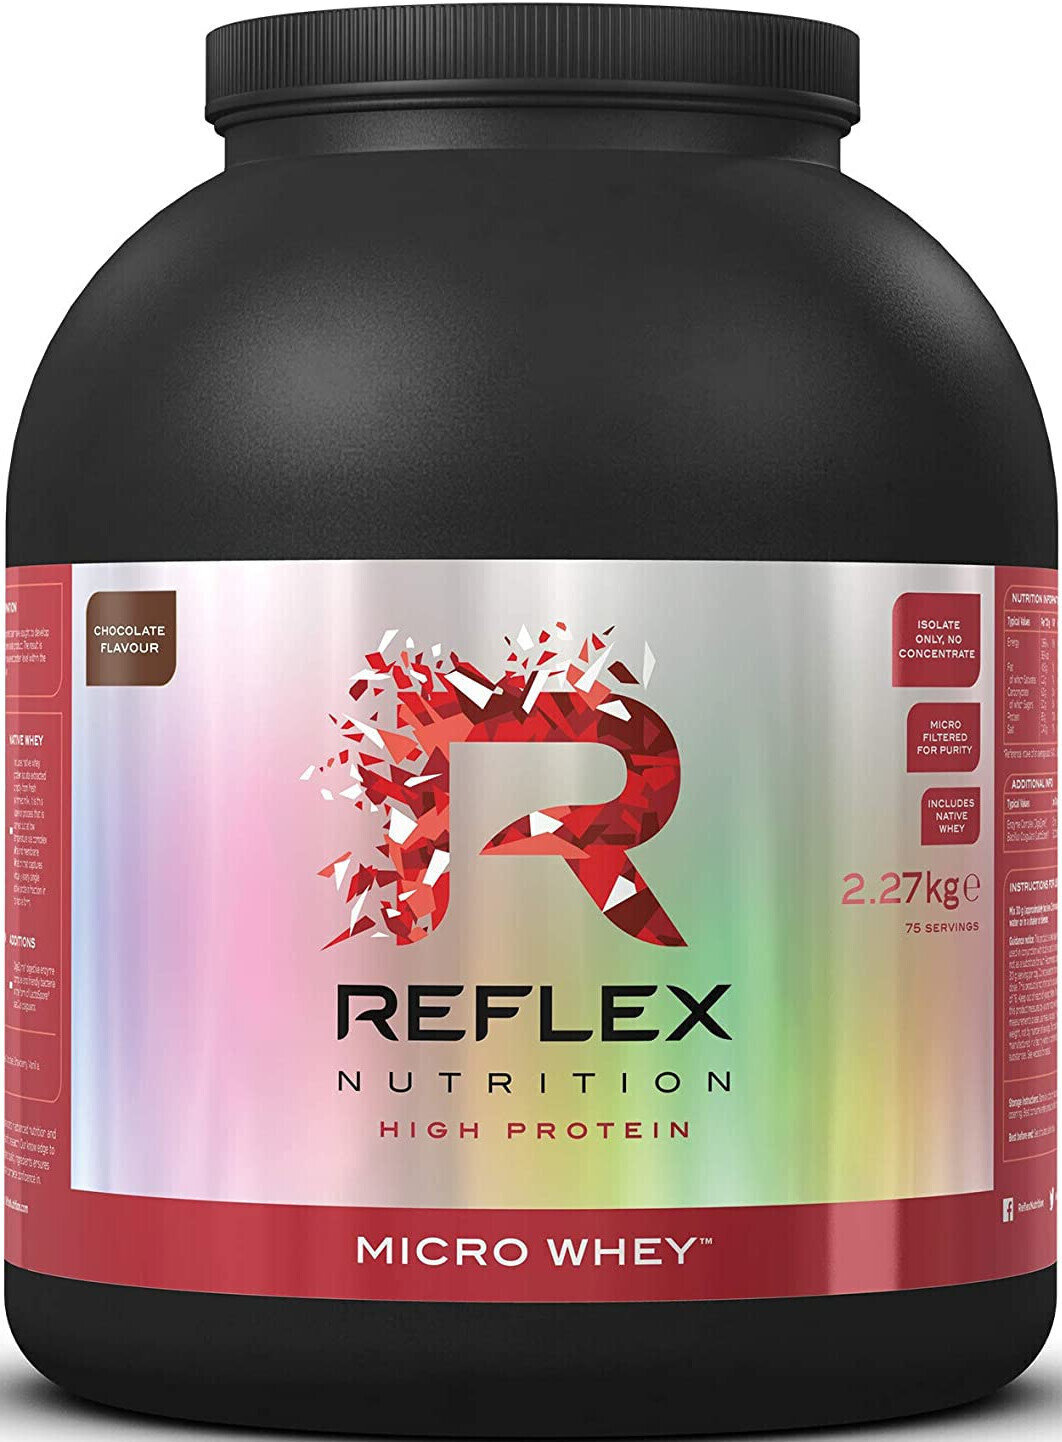 Proteinisolat Reflex Nutrition Micro Whey Schokolade 2270 g Proteinisolat